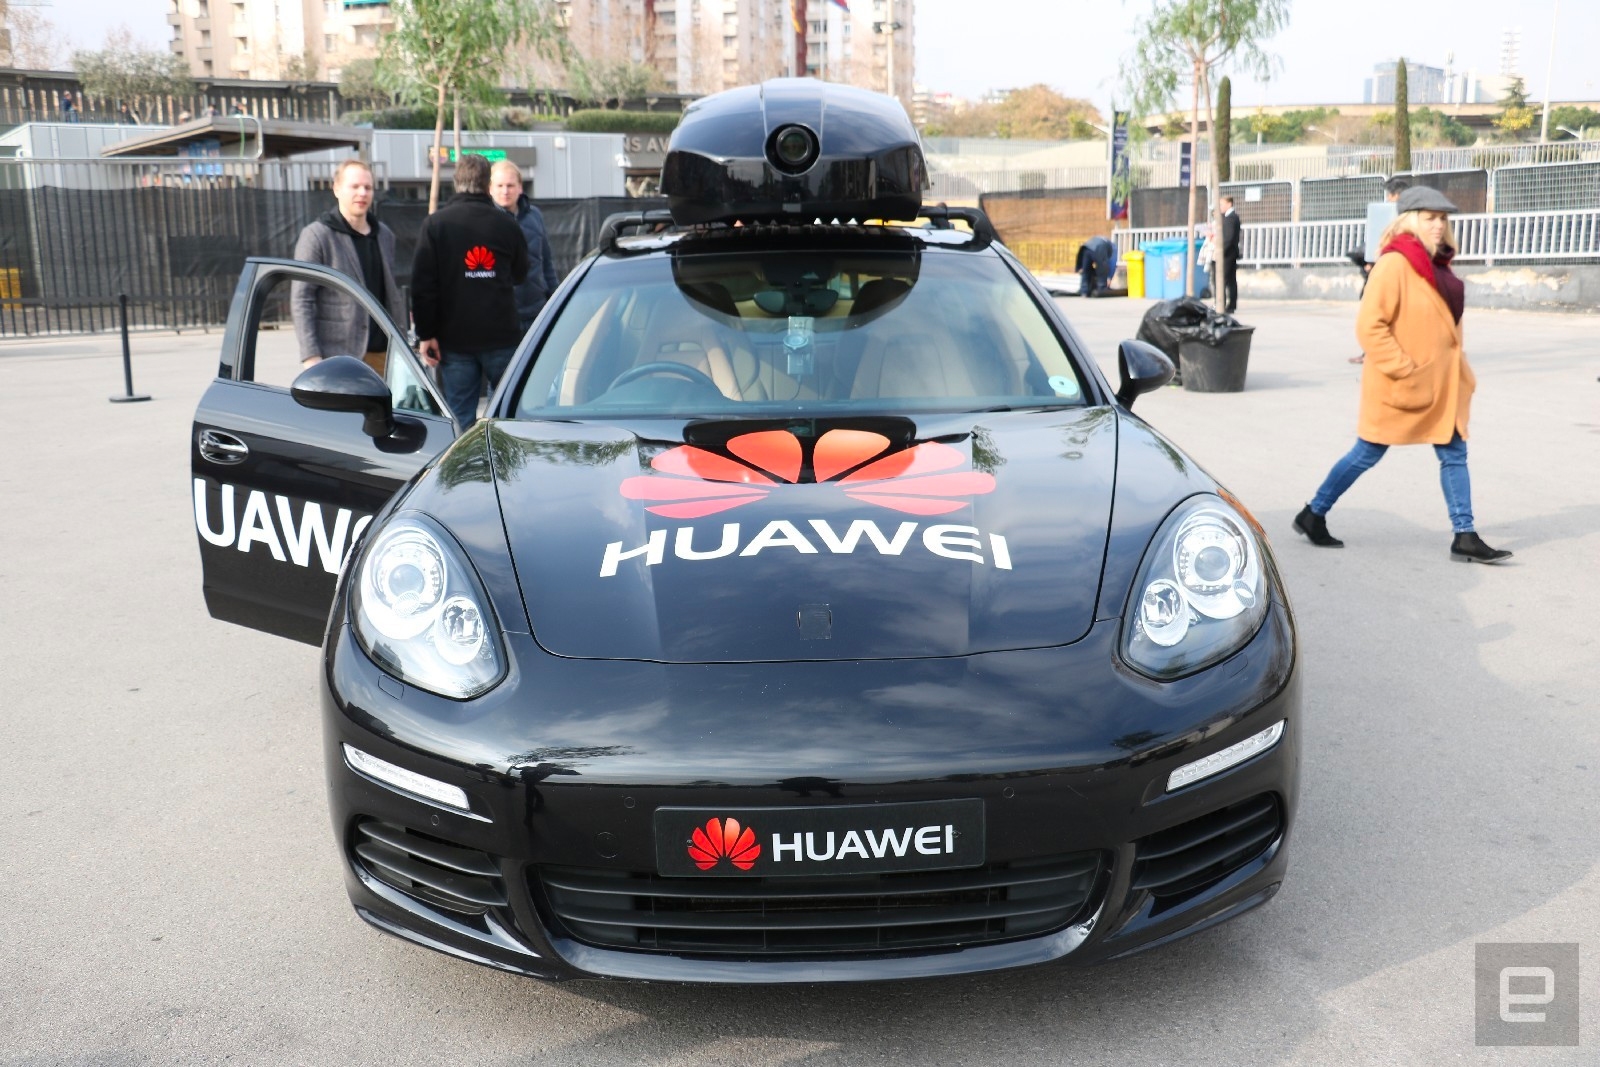 Huawei made a Porsche slightly autonomous with a smartphone | DeviceDaily.com